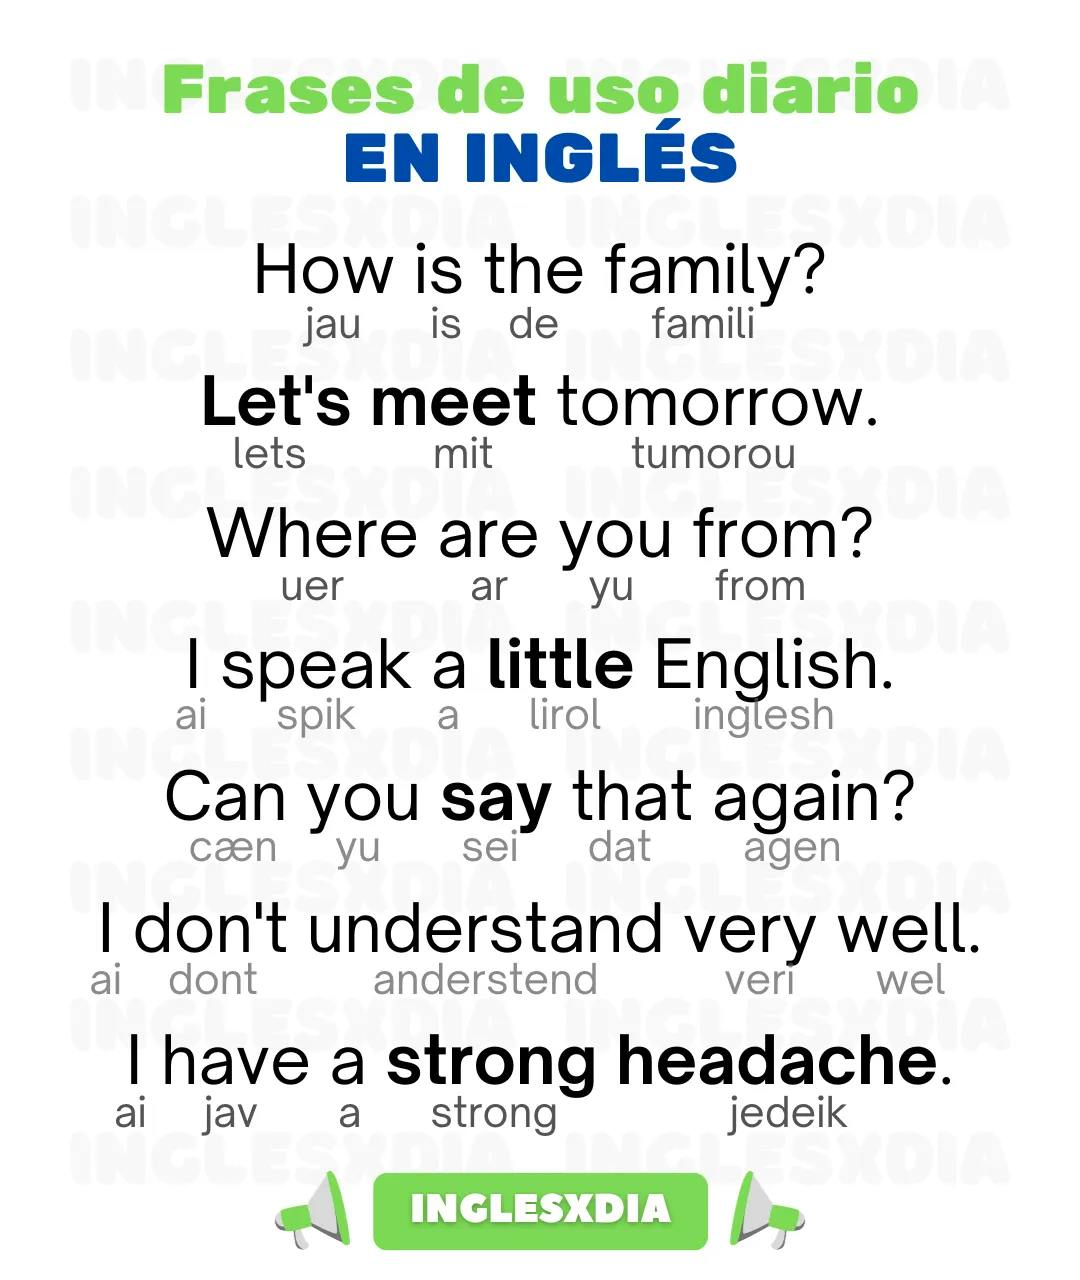 Curso de inglés en línea: frases en inglés de uso diario · How is the family?